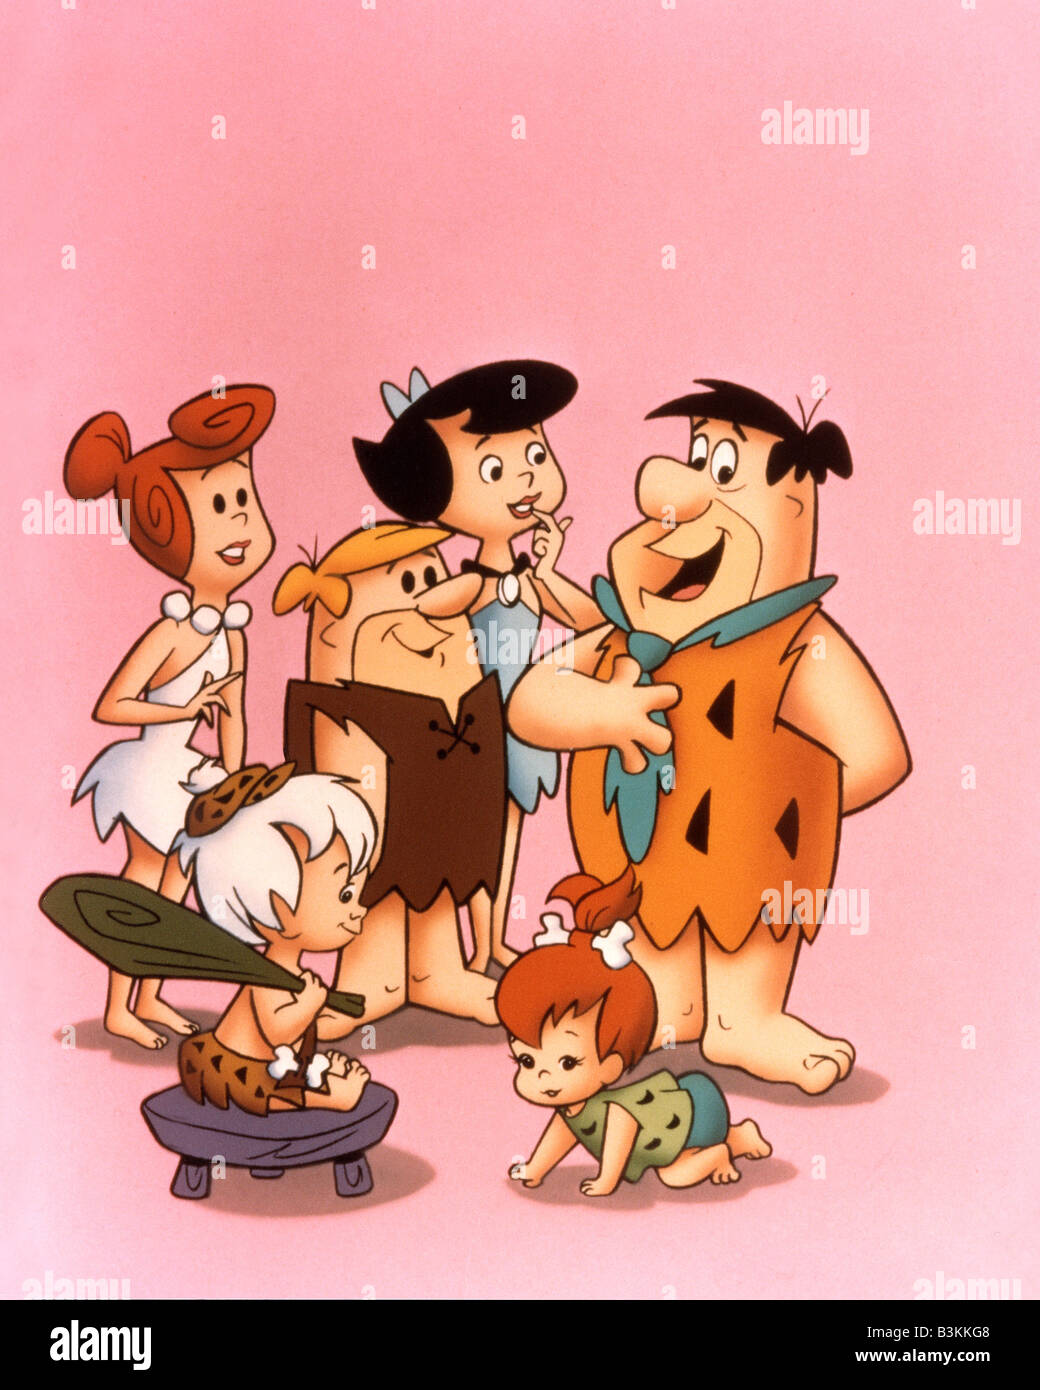 Flintstones cartoon immagini e fotografie stock ad alta risoluzione - Alamy